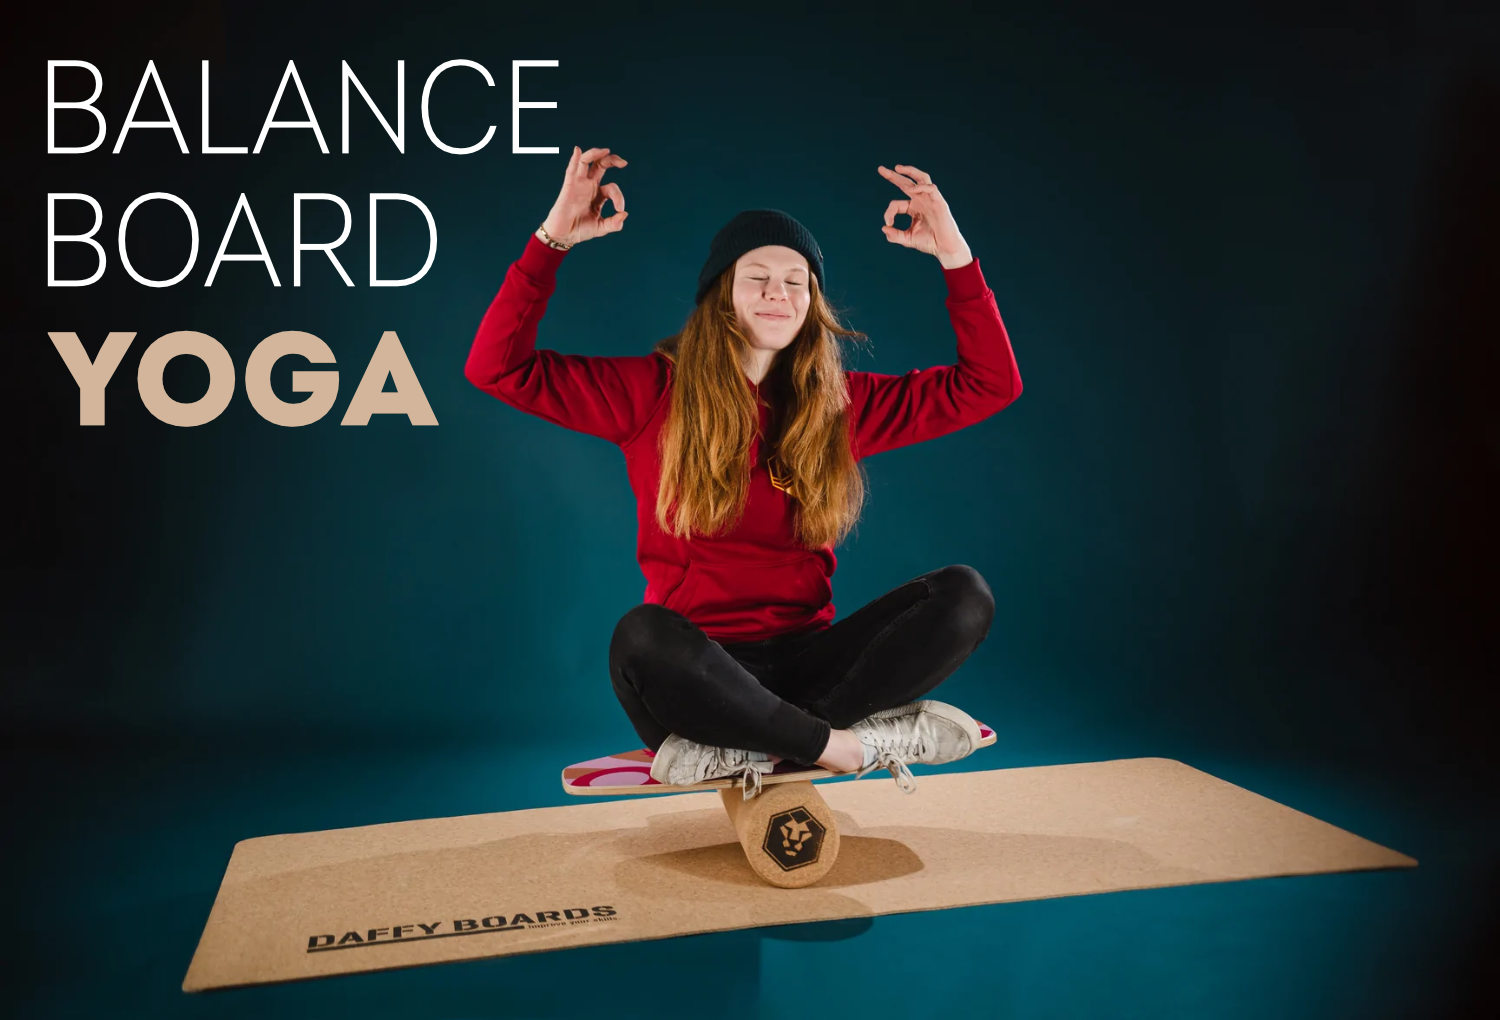 Eine Frau macht Yoga auf einem Balance Board